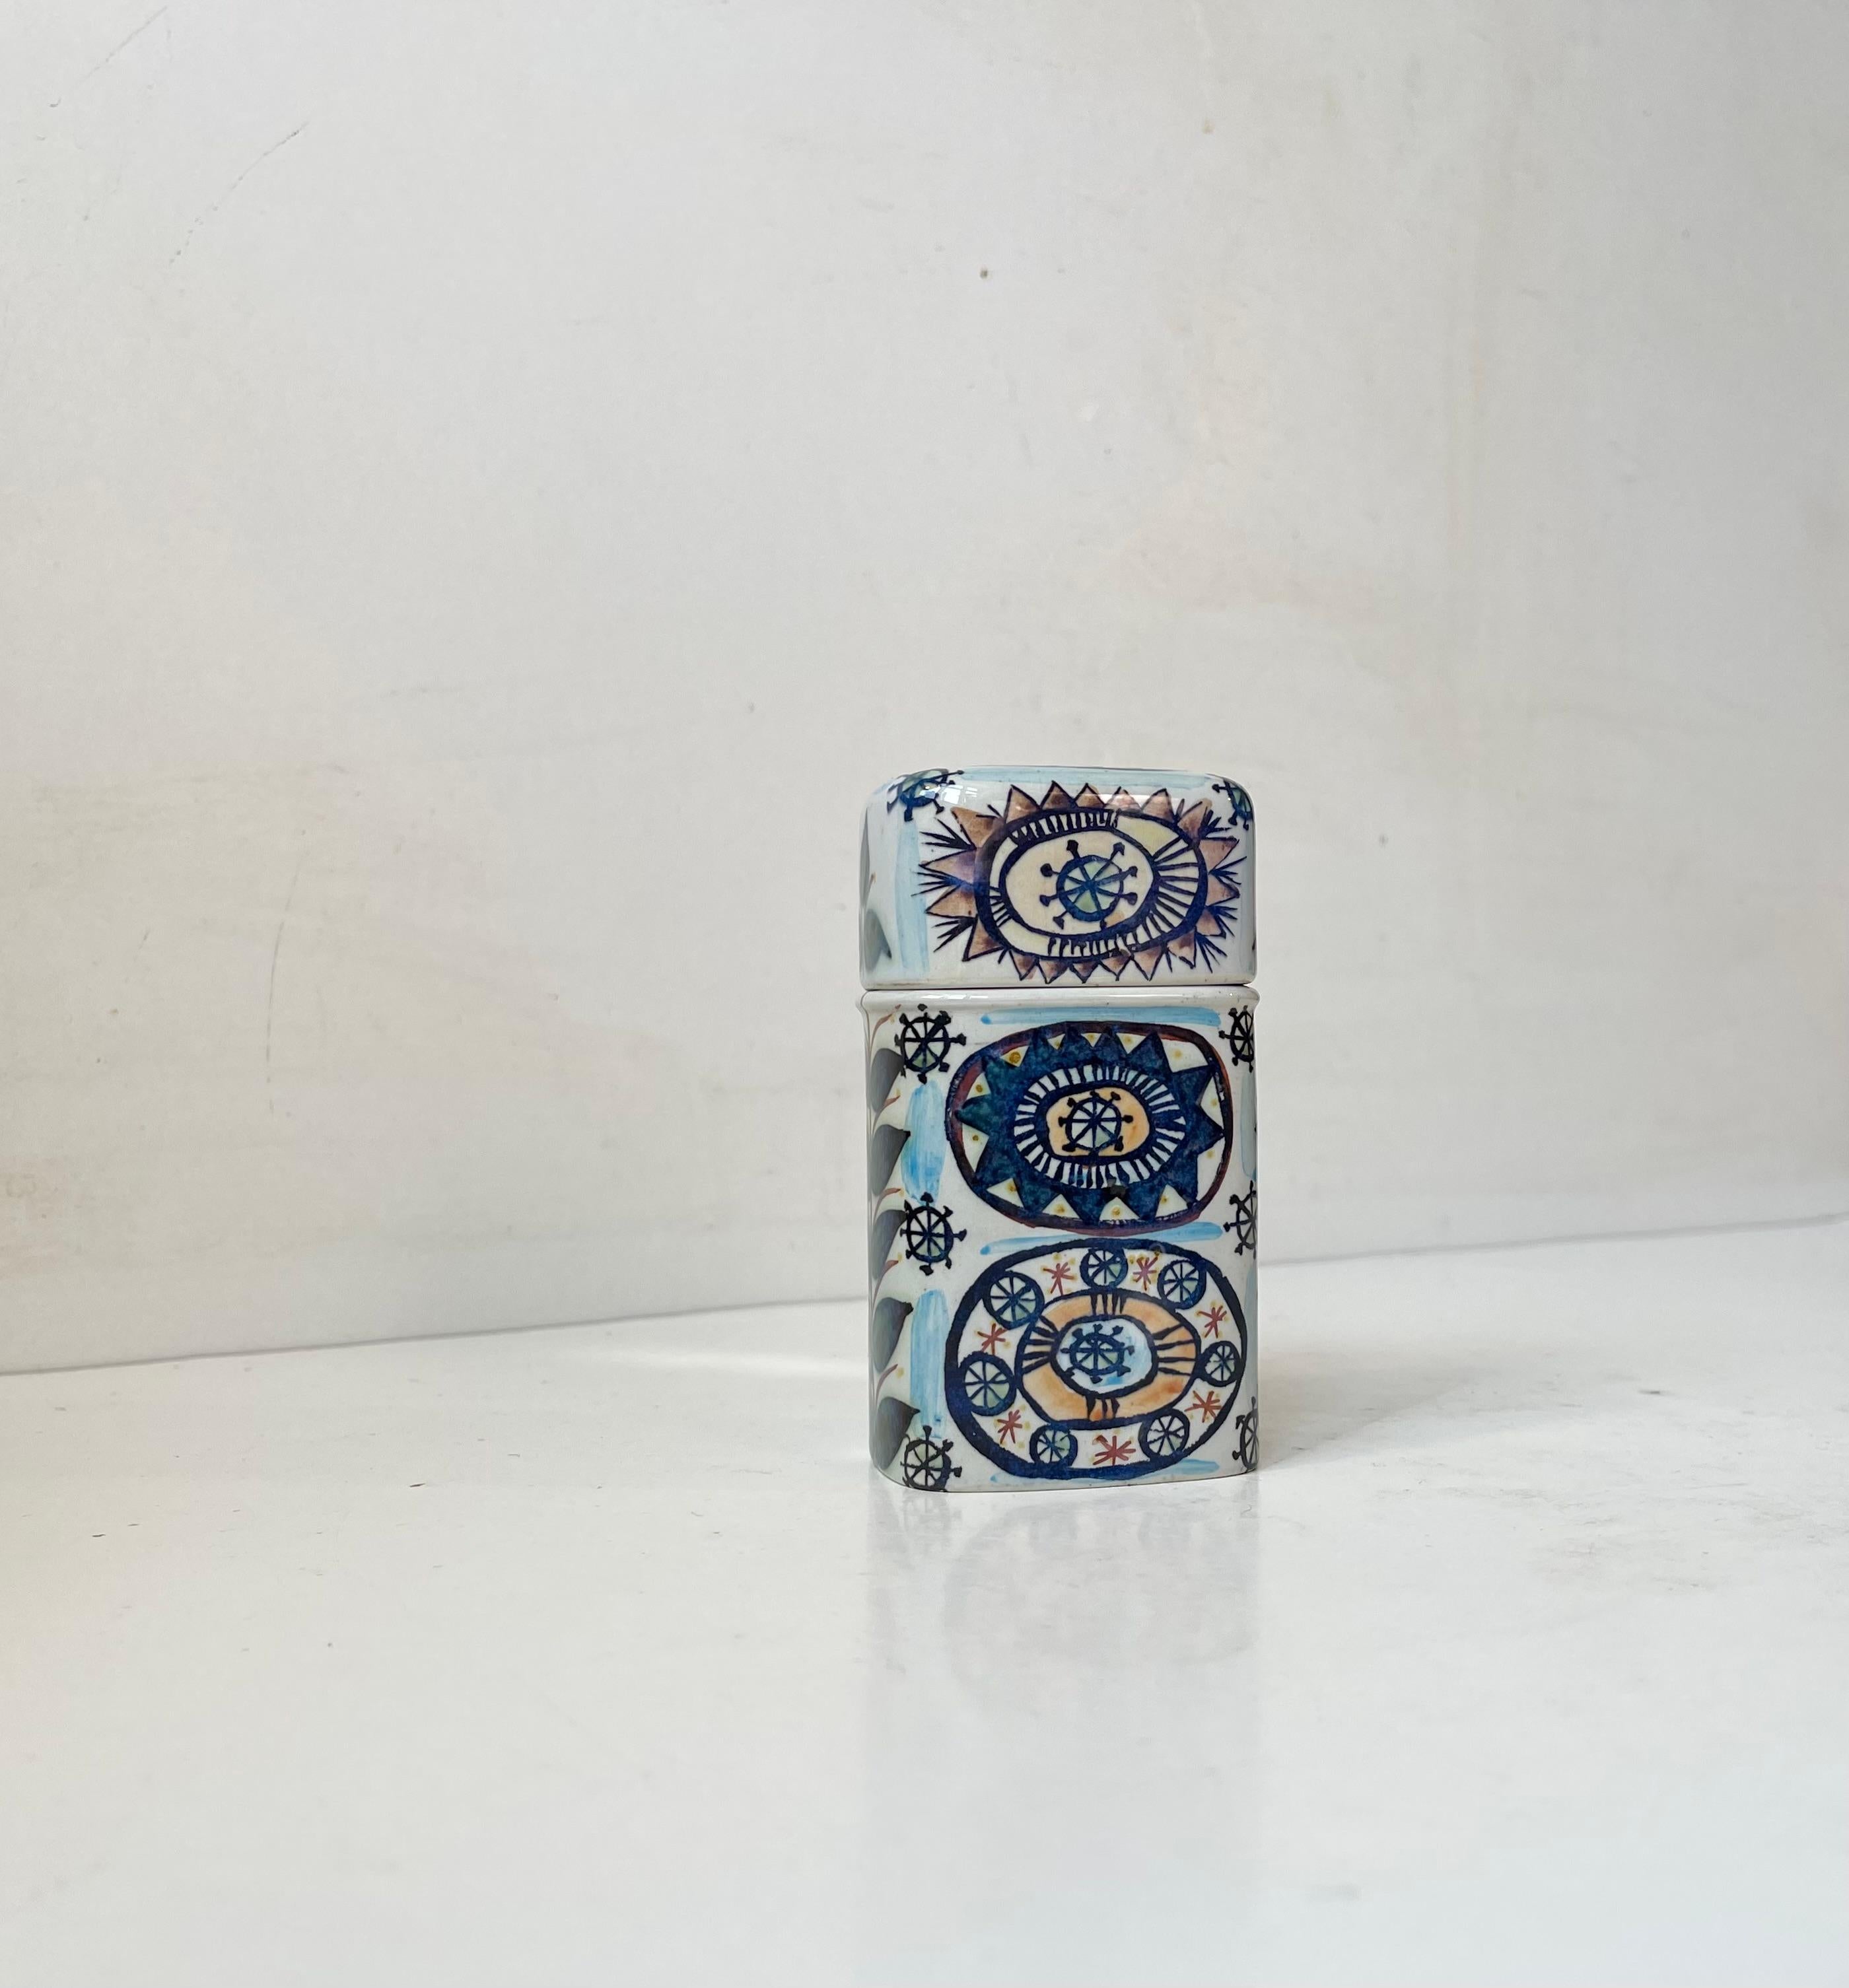 Ein seltenes Royal Copenhagen Zigarettenglas/Trinket aus Fayence, dekoriert von der norwegischen Künstlerin/Designerin Marianne Johnson. Er ist auf allen Seiten dekoriert und verfügt über einen leicht geneigten Boden, der den Zugriff auf Ihre